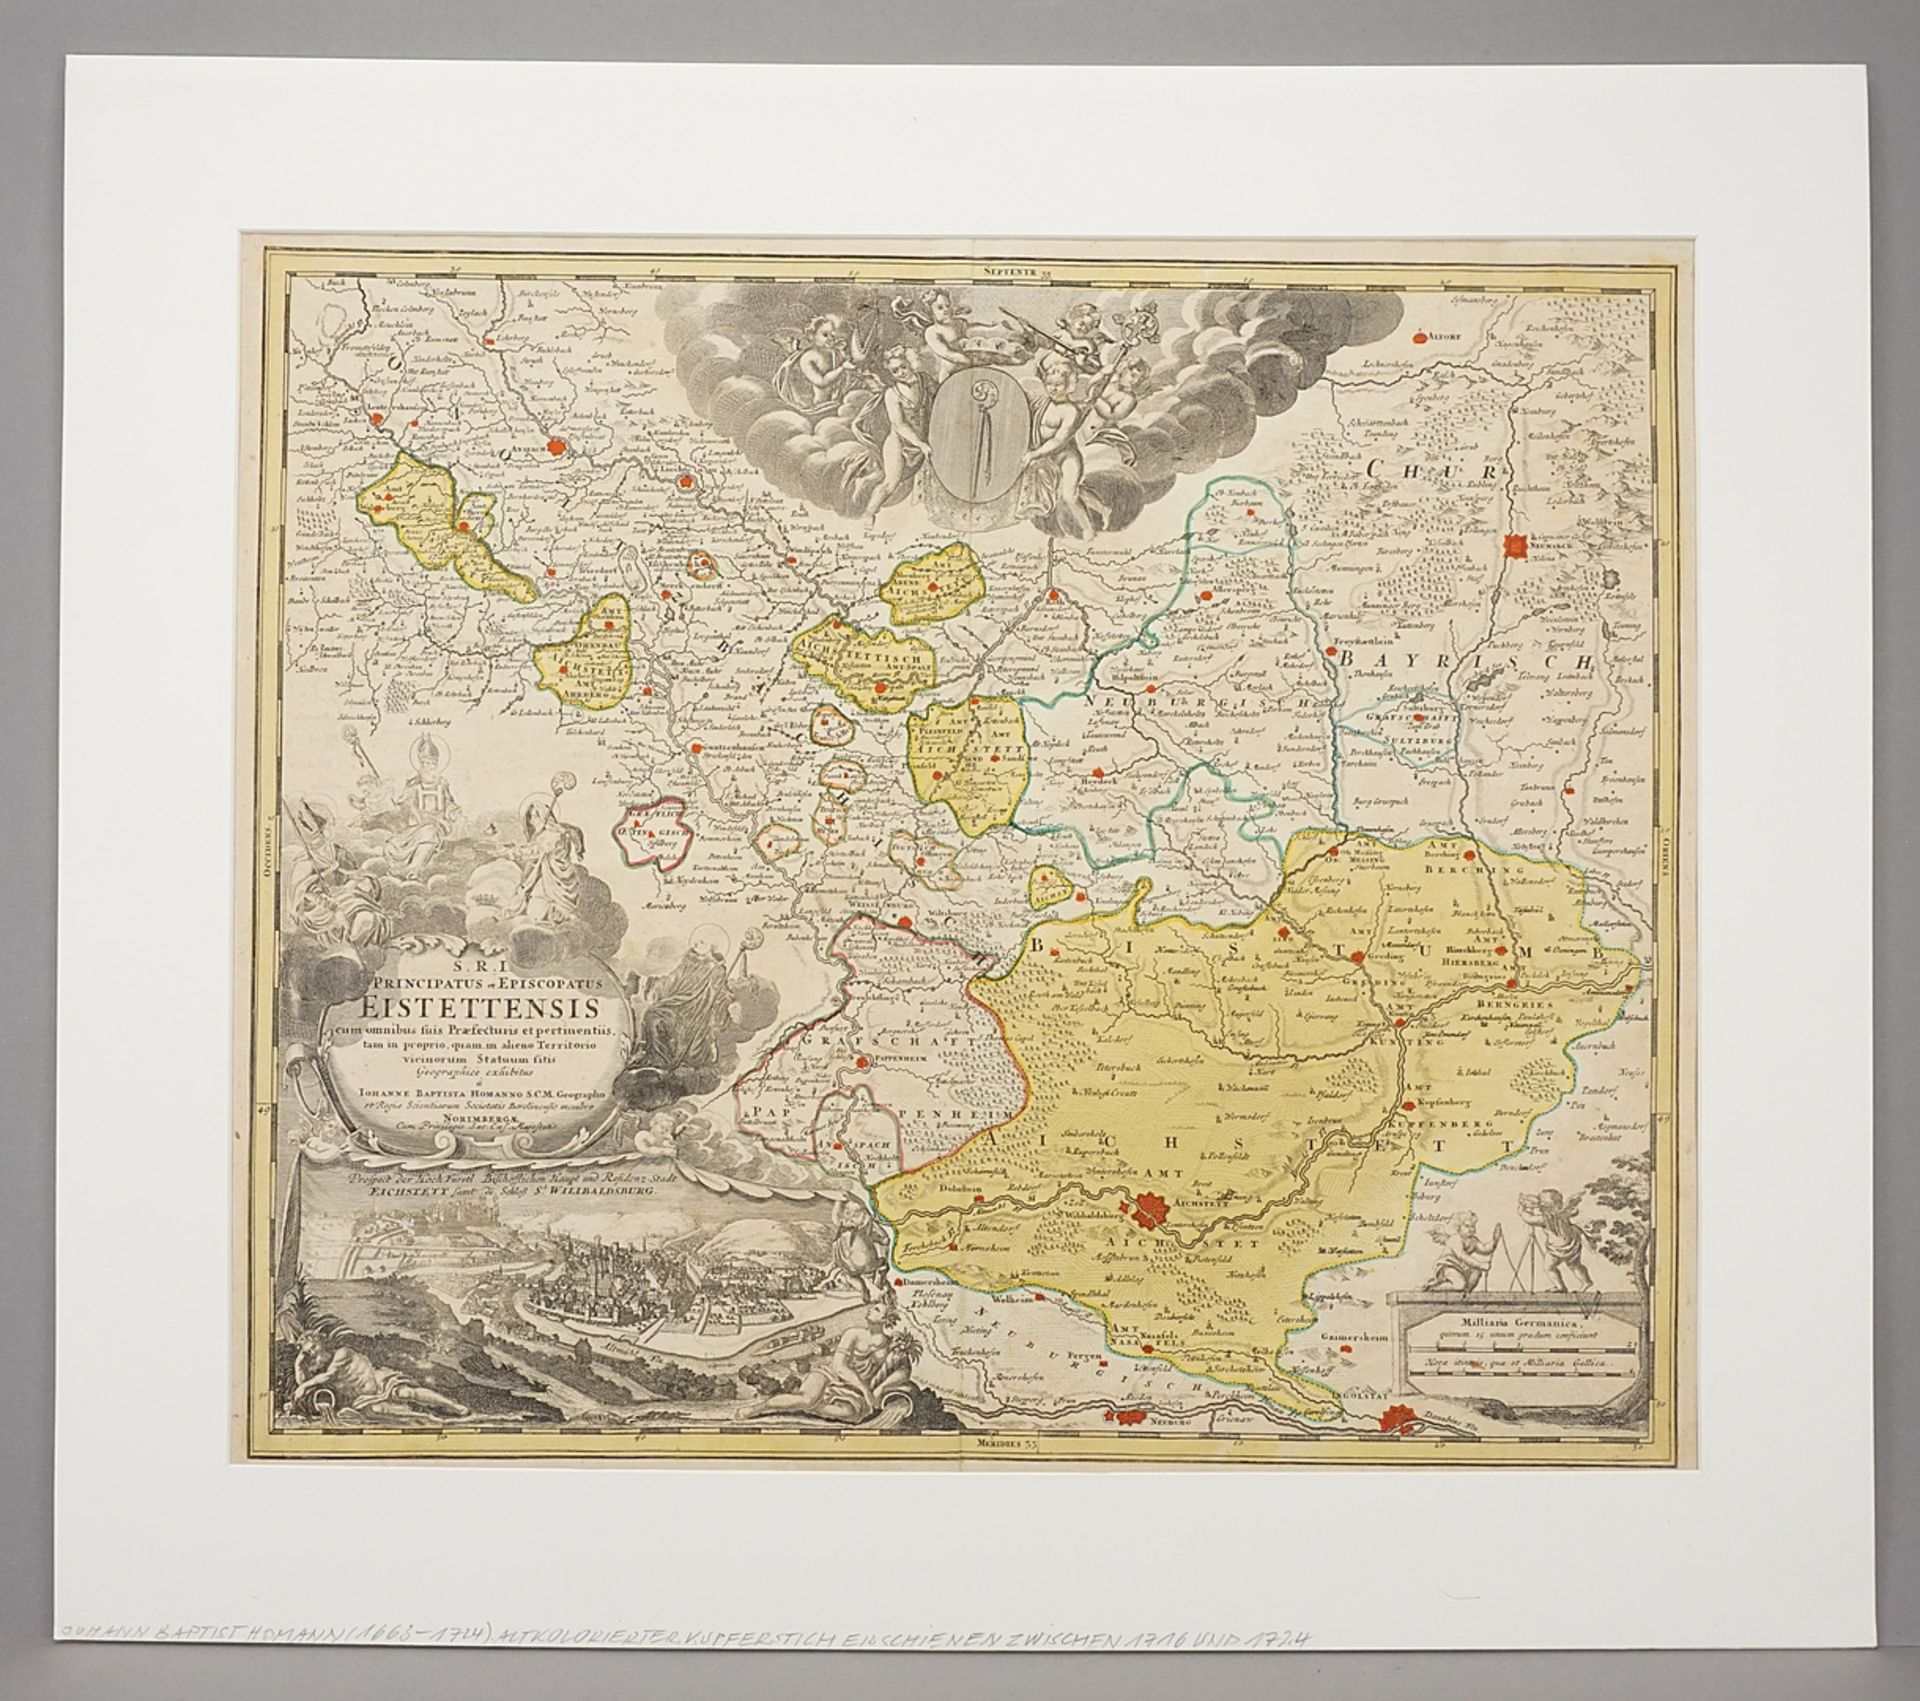 Johann Baptist Homann, "S.R.I. Principatus et Episcopatus Eistettensis" (Karte von Eichstätt) - Bild 2 aus 3